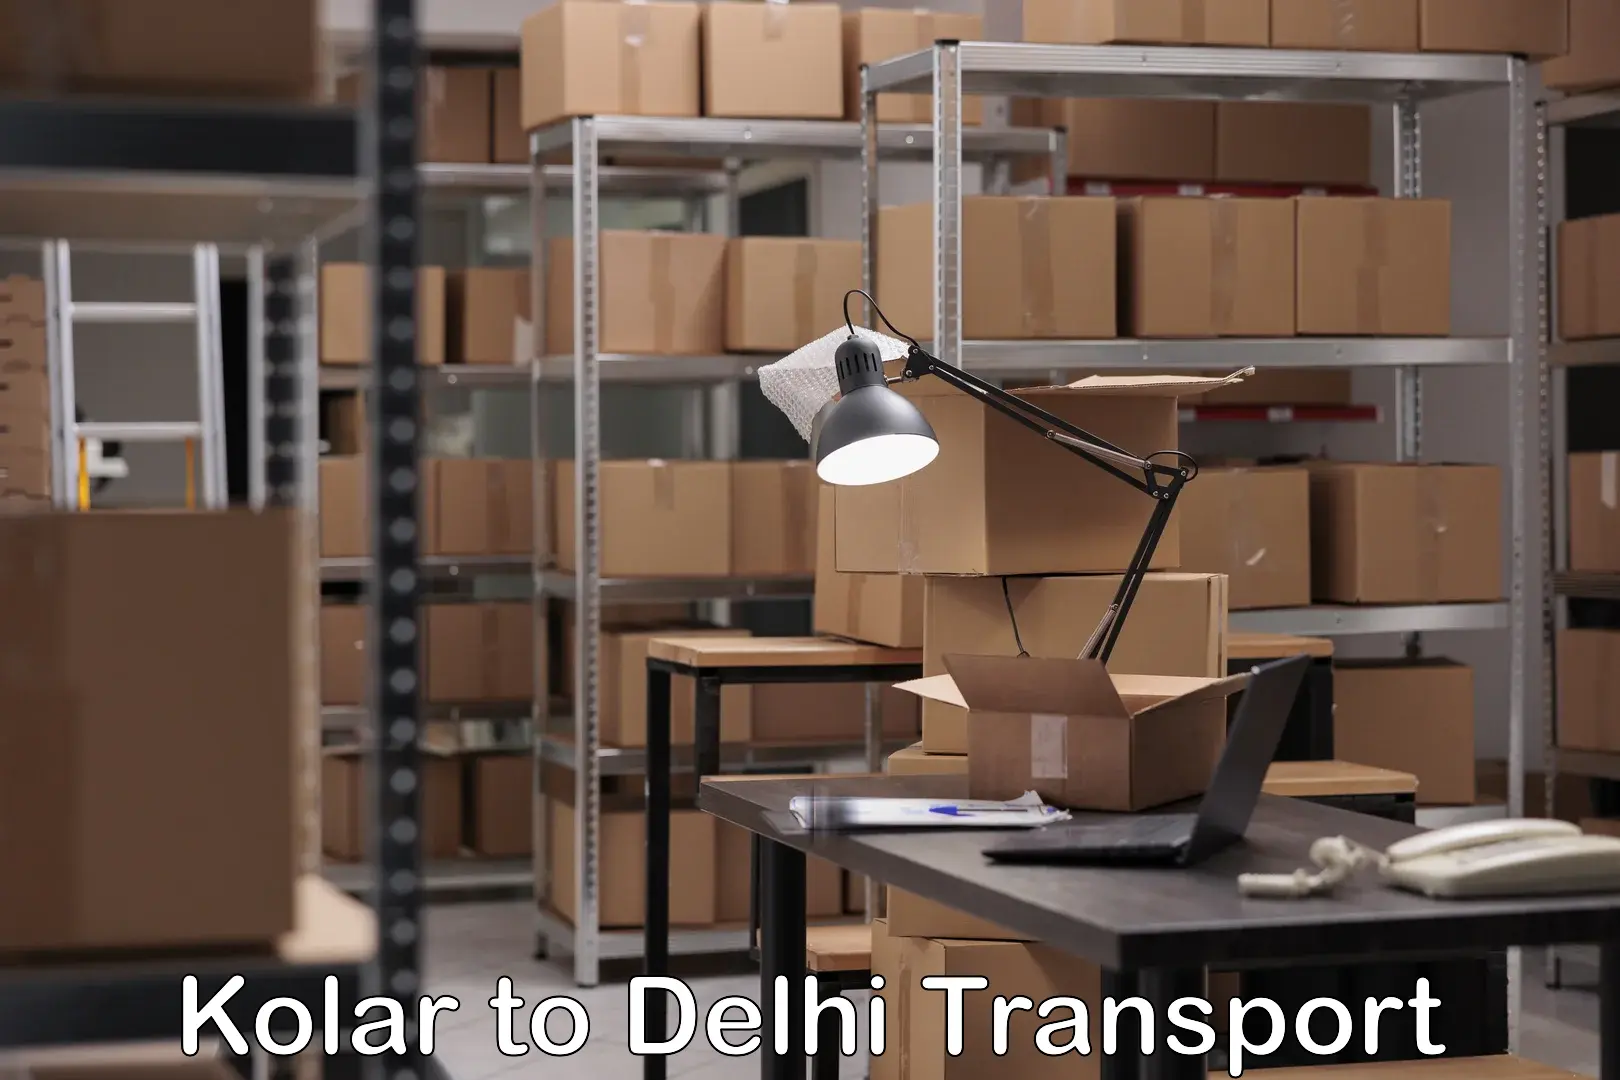 Daily parcel service transport Kolar to Delhi